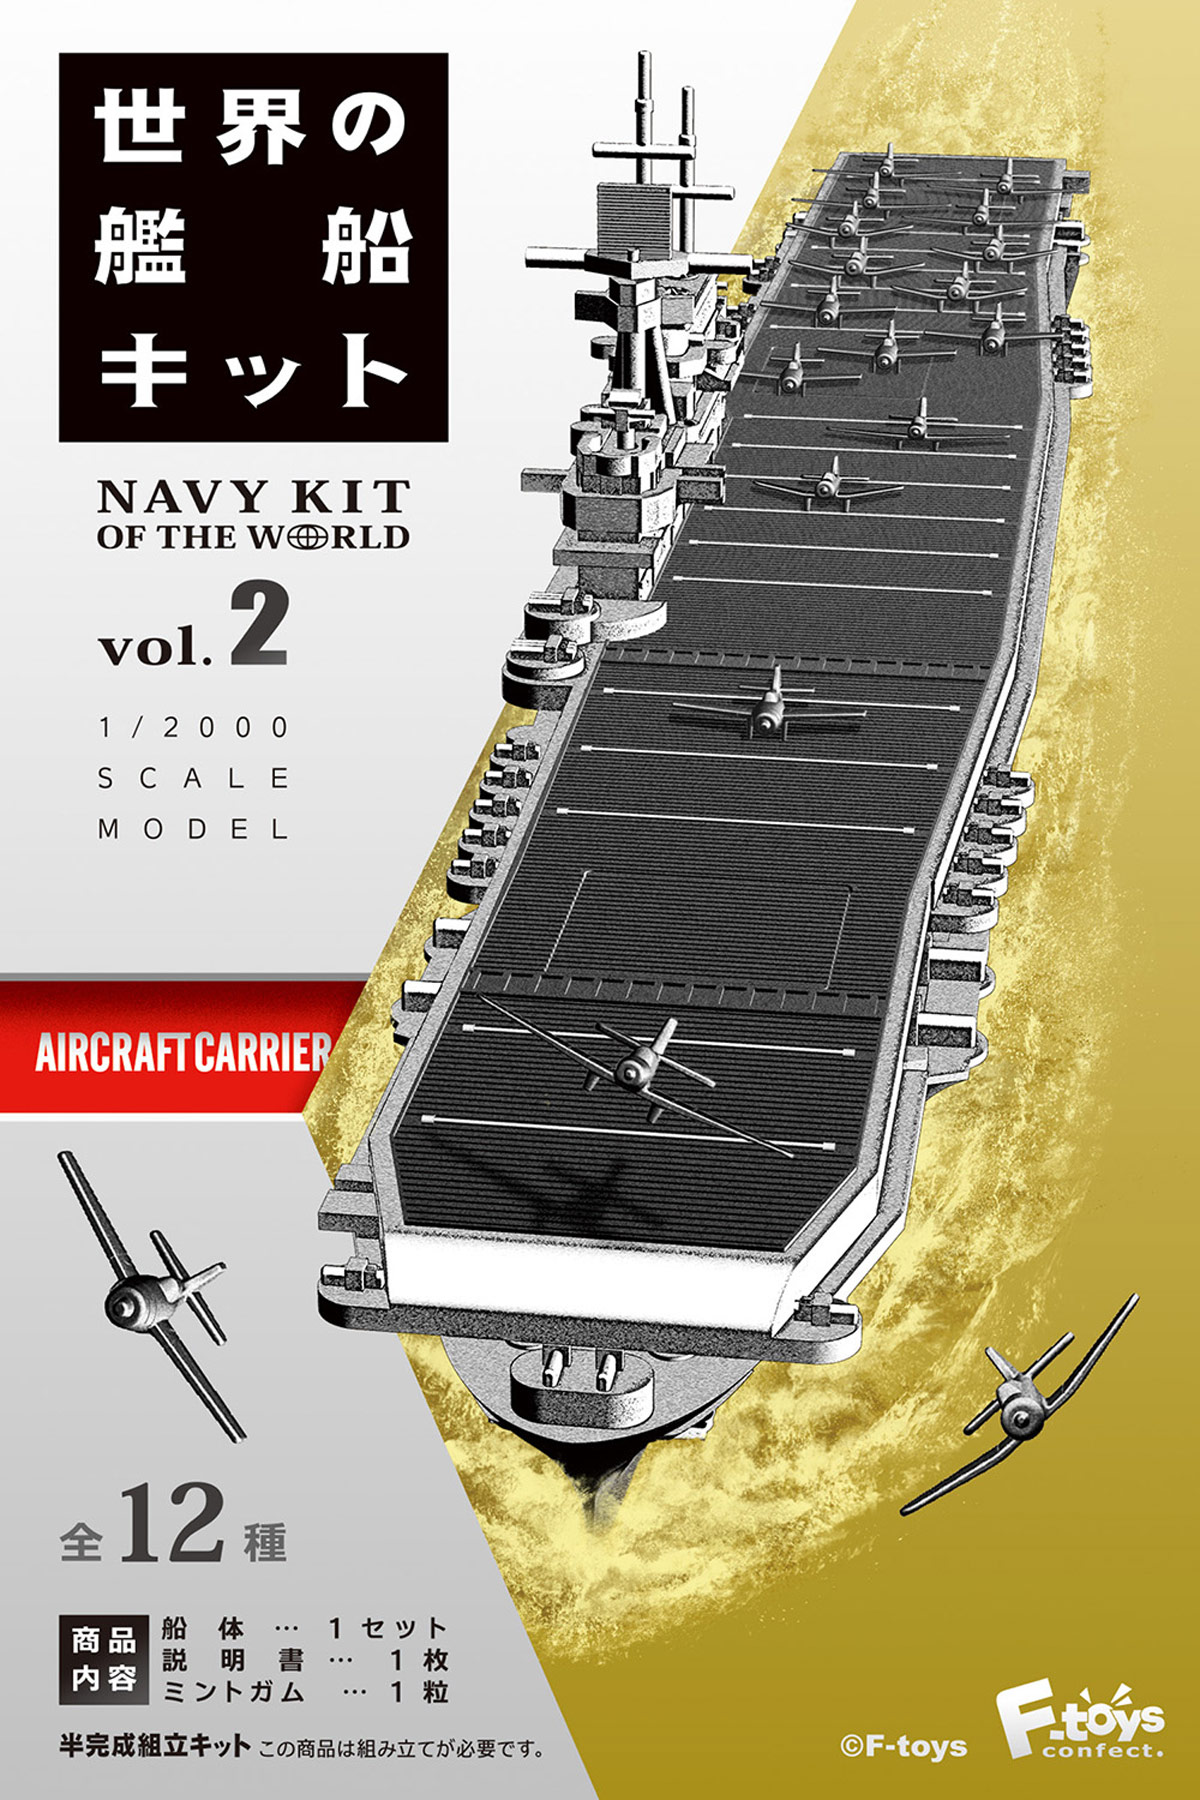 パッケージ開けてみました エフトイズ 世界の艦船キット 第2弾です プラッツブログ Platz Blog